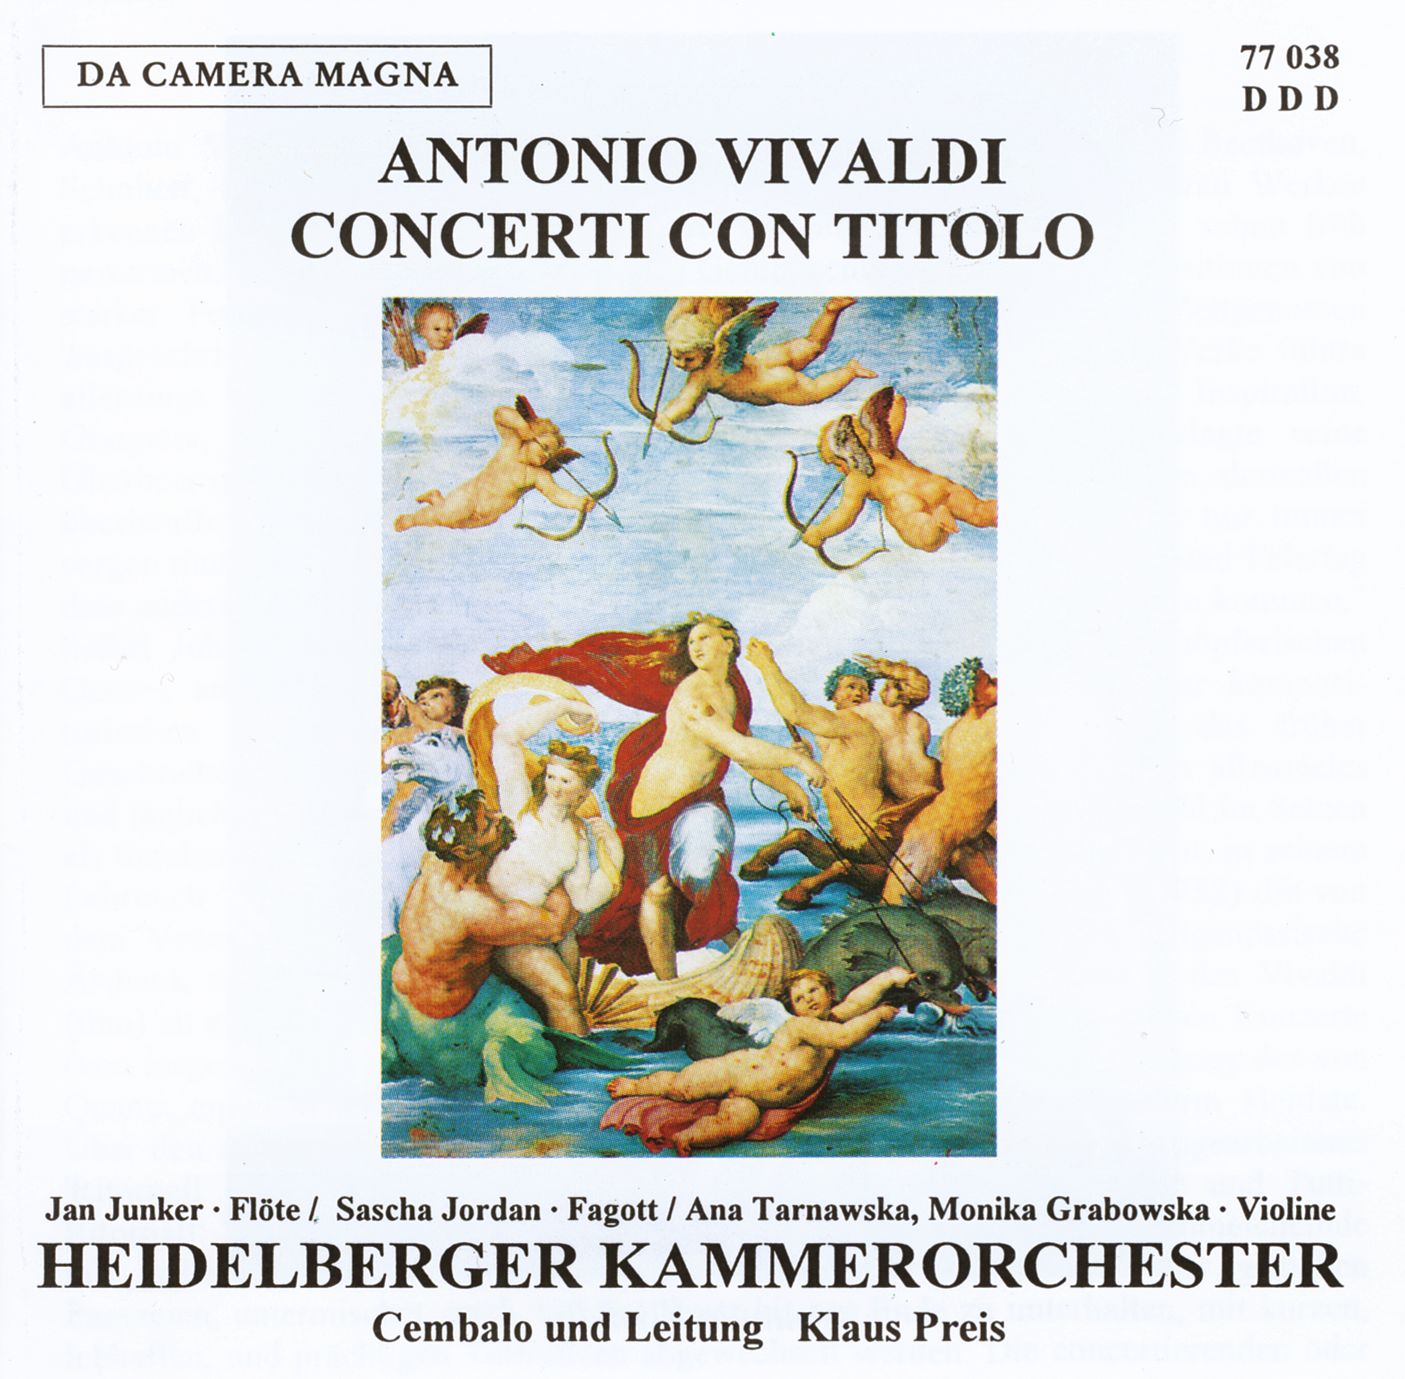 Antonio Vivaldi - Concerti con Titolo